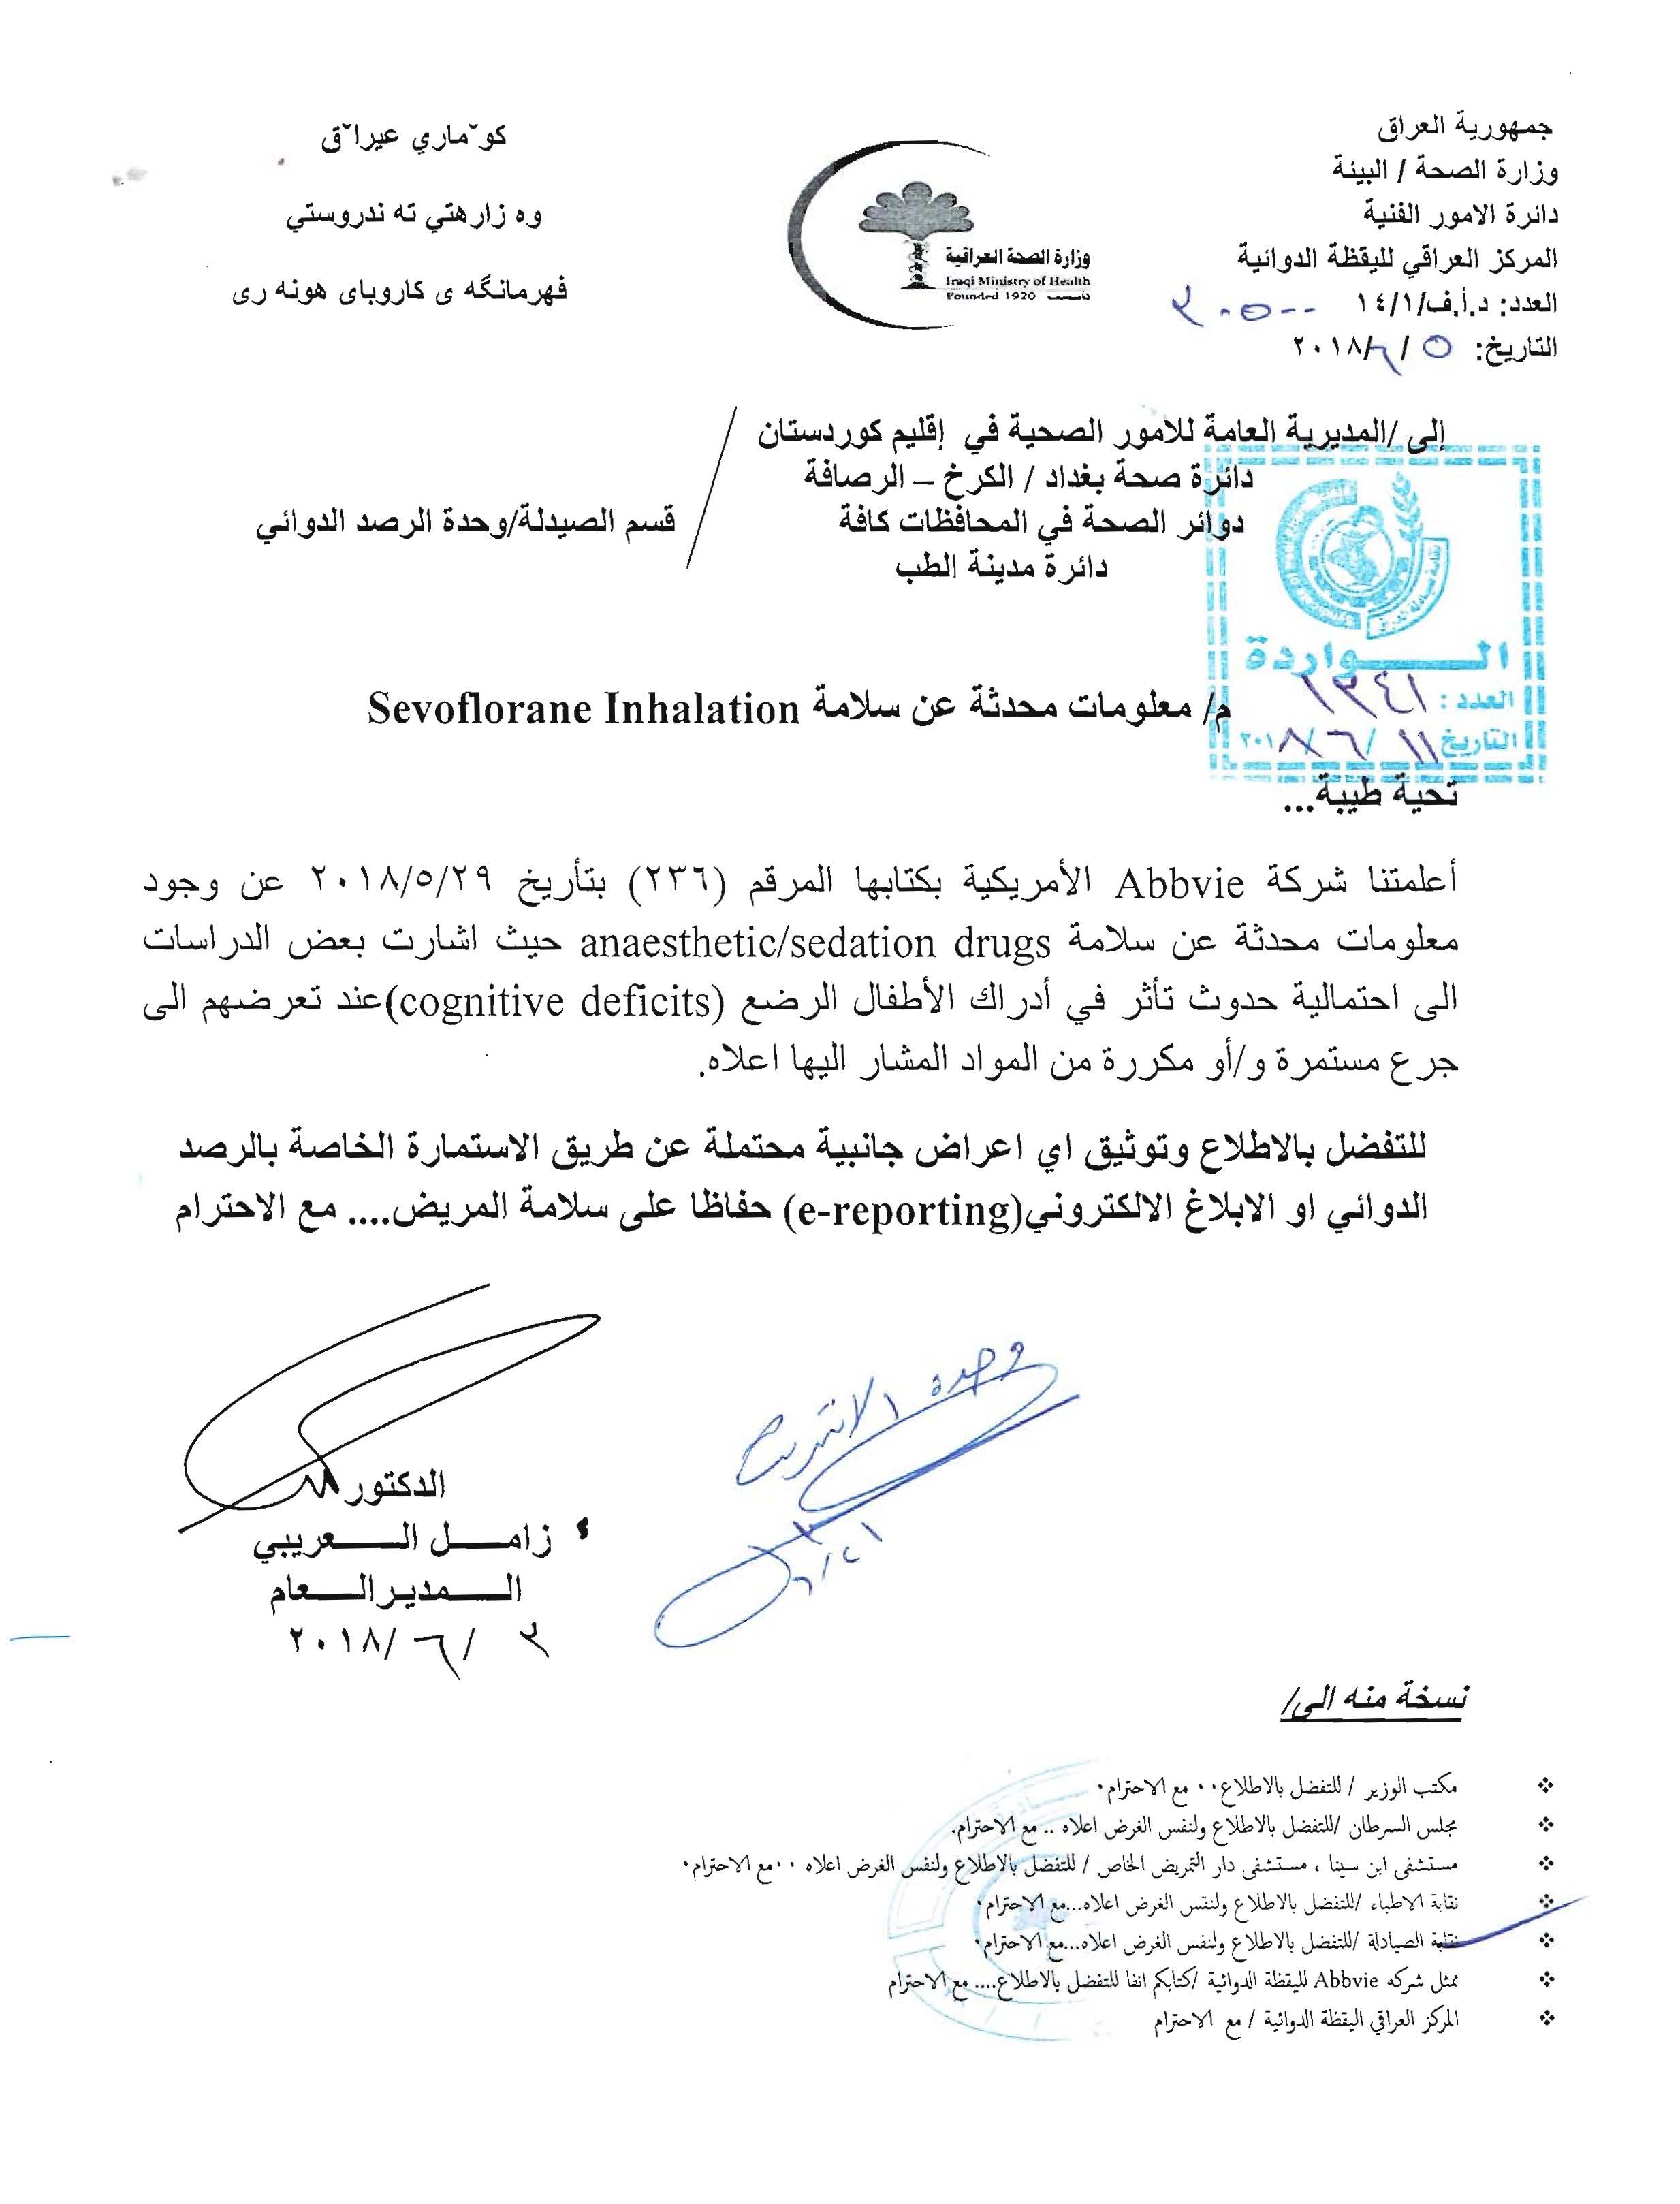 التعاميم الصادرة عن وزارة الصحة ونقابة الصيادلة العراقيين